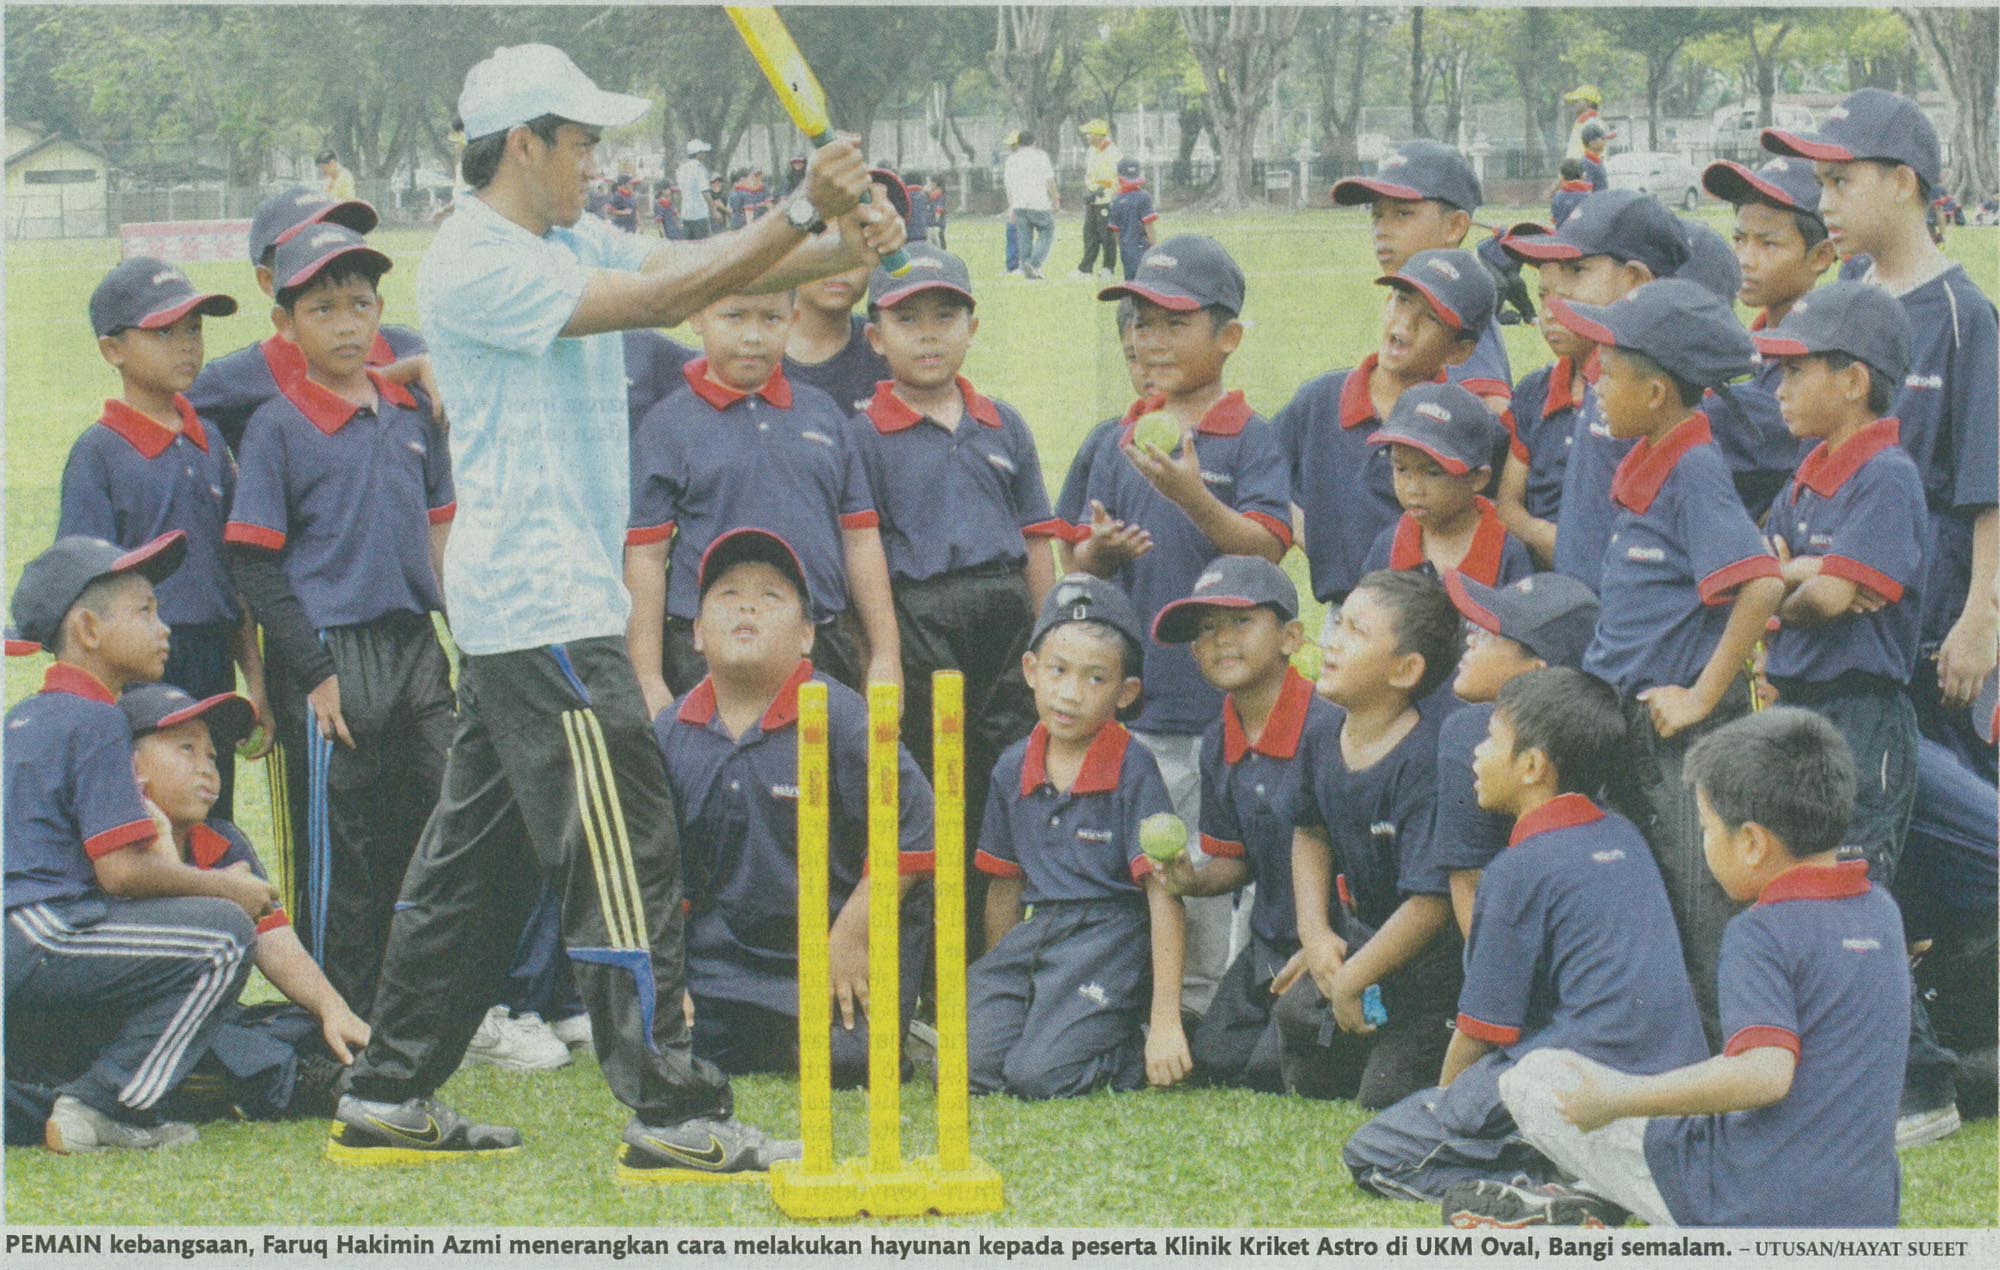 Pemain kebangsaan, Faruq Hakimin Azmi menerangkan cara melakukan hayunan kepada peserta klinik Kriket Astro di UKM Oval, Bangi semalam. - Utusan/Hayat Sueet